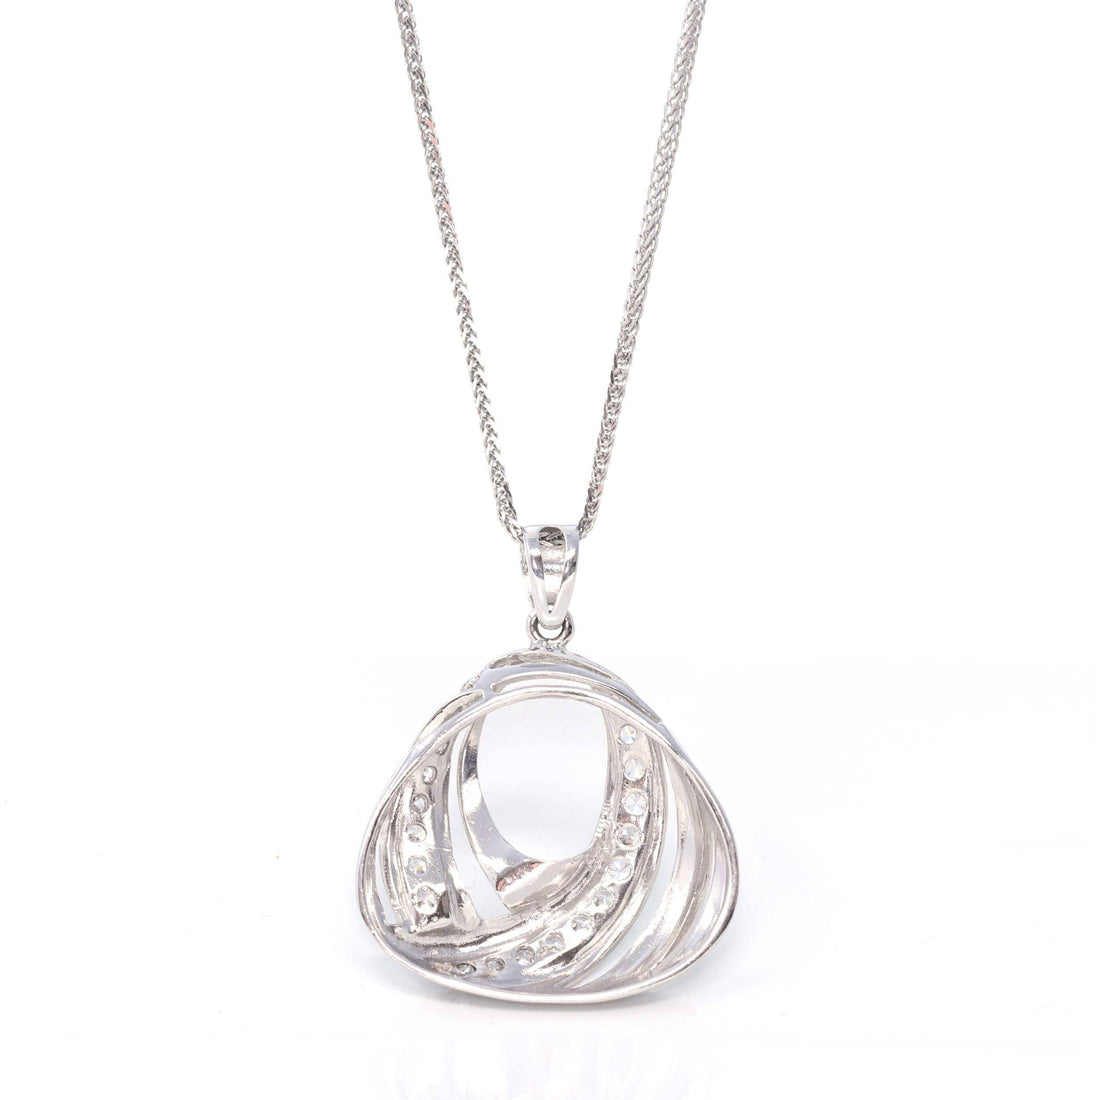 Baikalla Jewelry gemstone jewelry 18k White Gold Necklace With Zircon